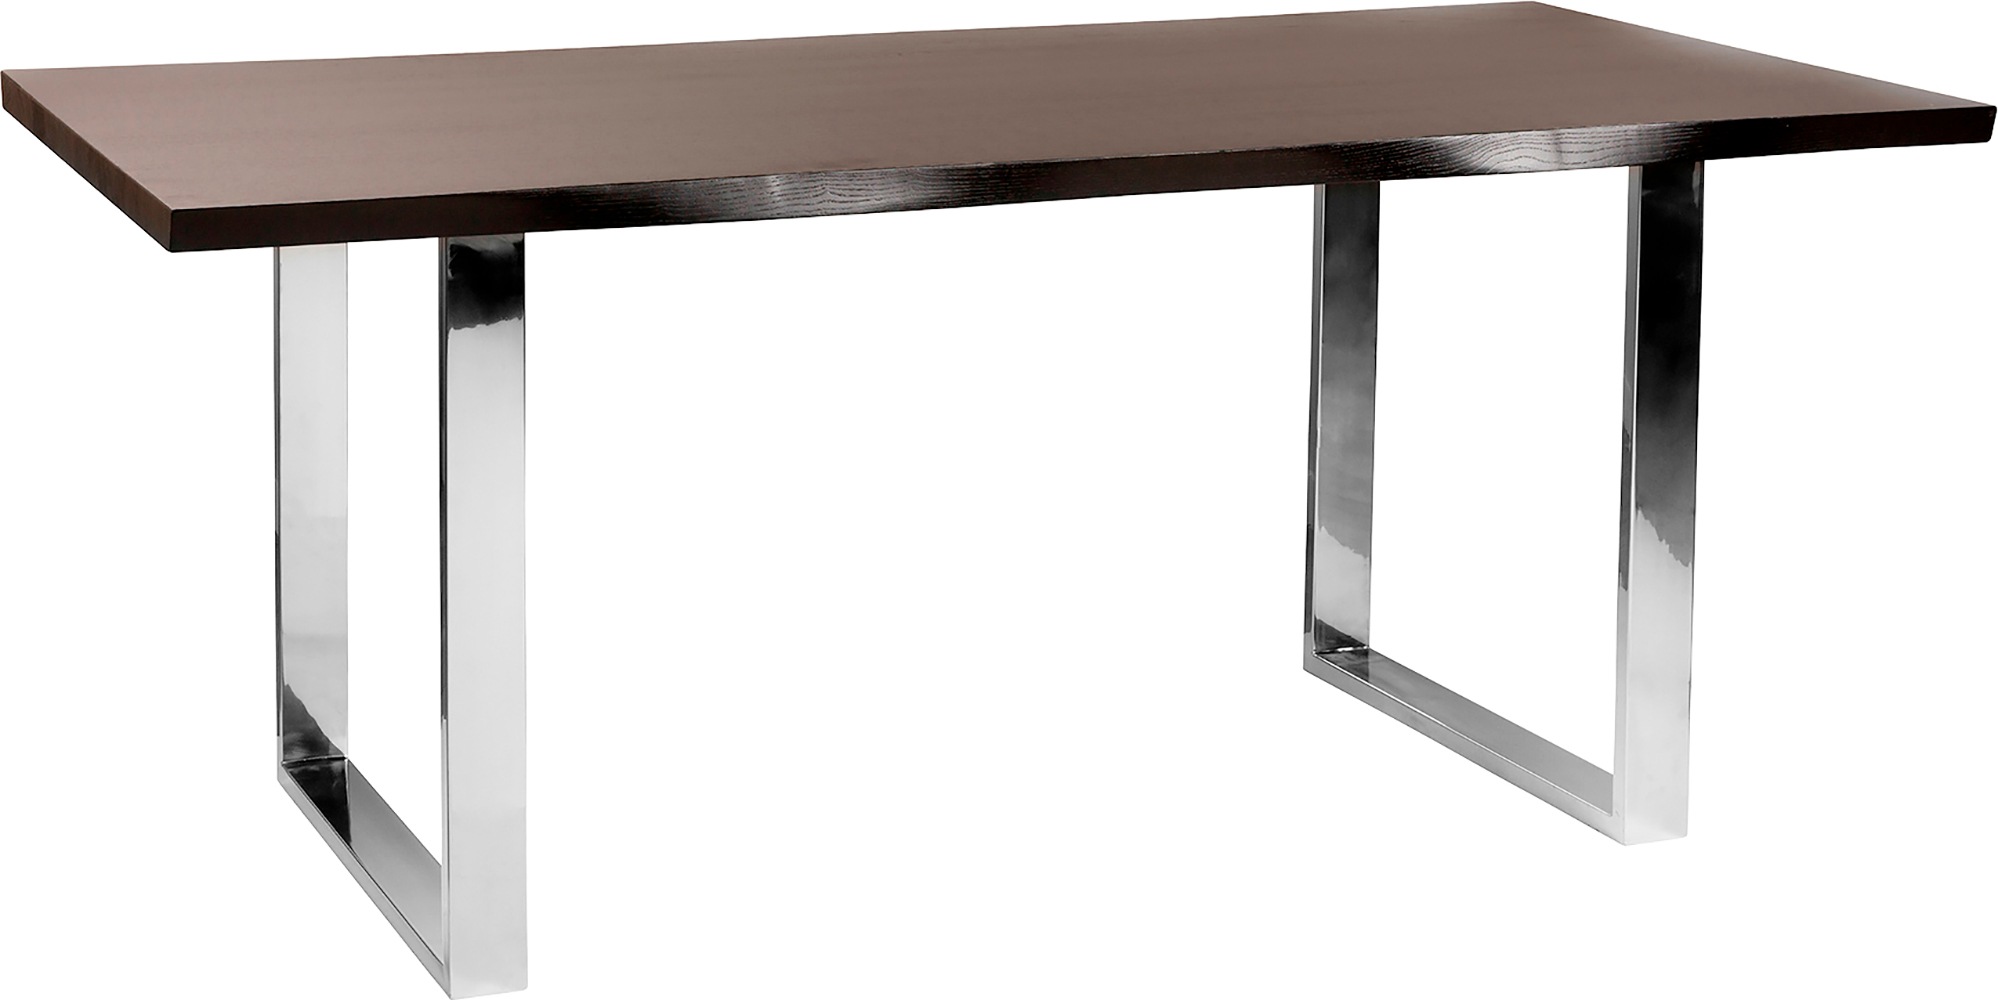 Fink Esstisch, Form, massive Mit BAUR geölt Tischplatte, weiß | geschwungener seitlich